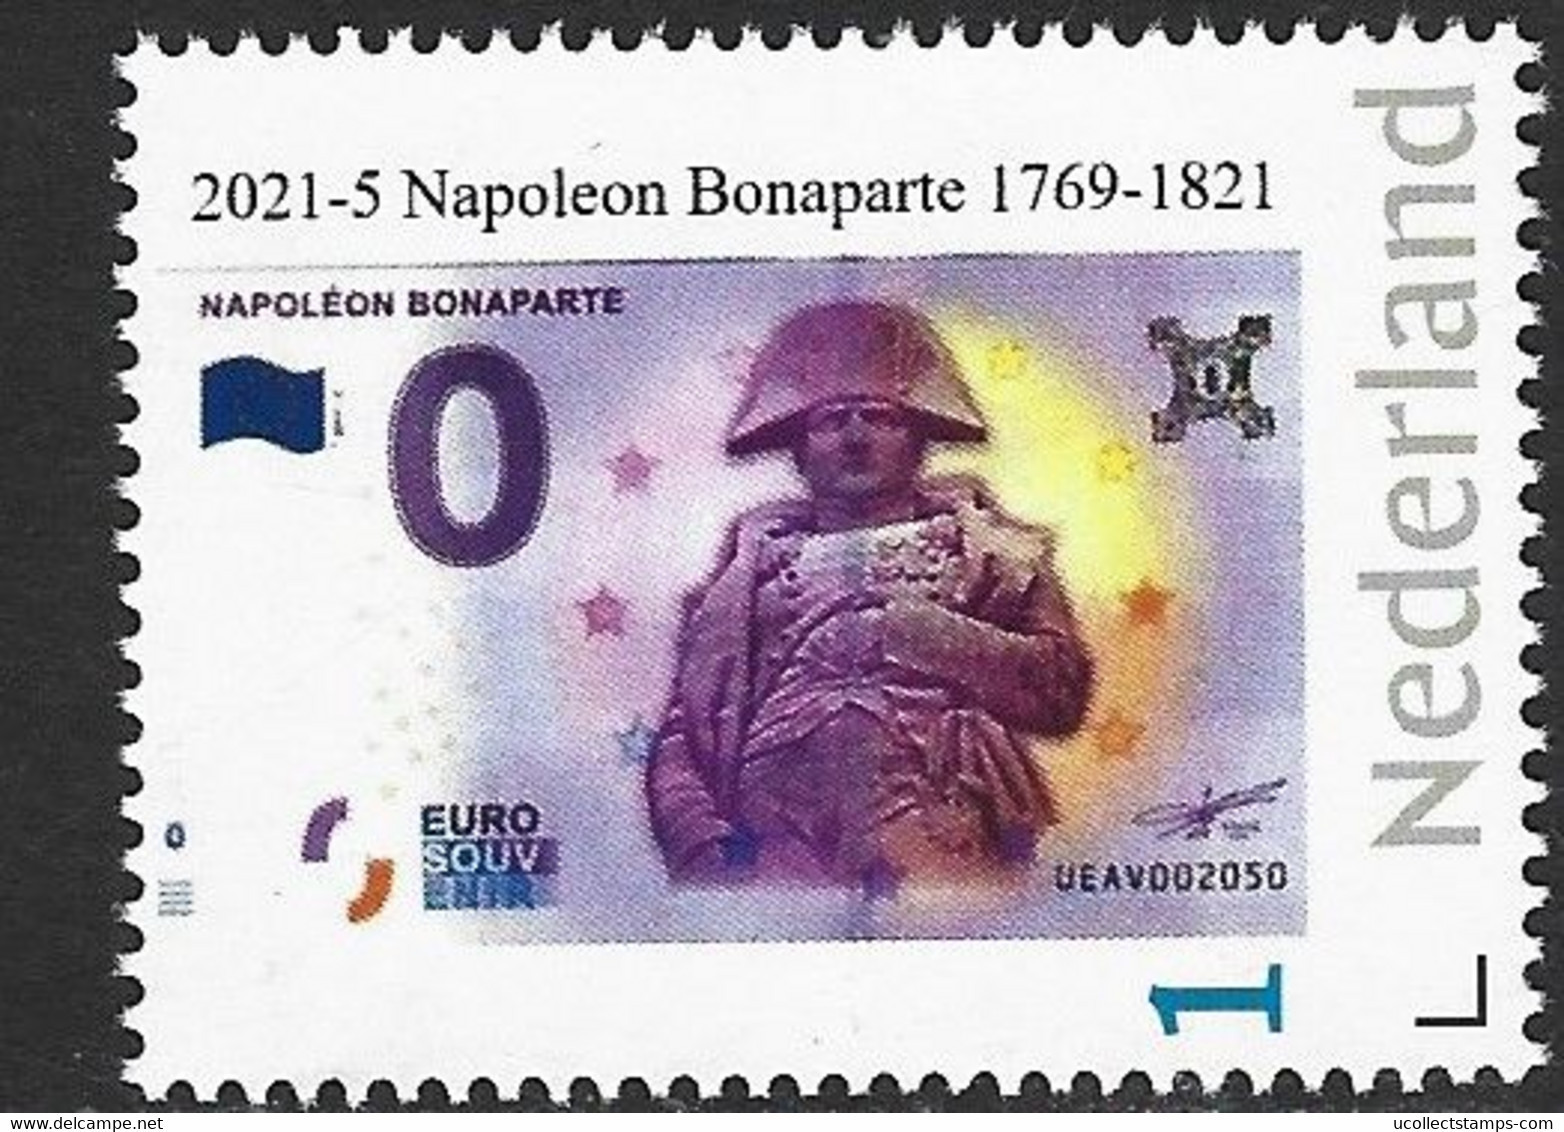 Nederland 2021-5  Napoleon Bonaparte 1769-1821  Bankbiljet/banknote On Stamp   Postfris/mnh/sans Charniere - Unclassified